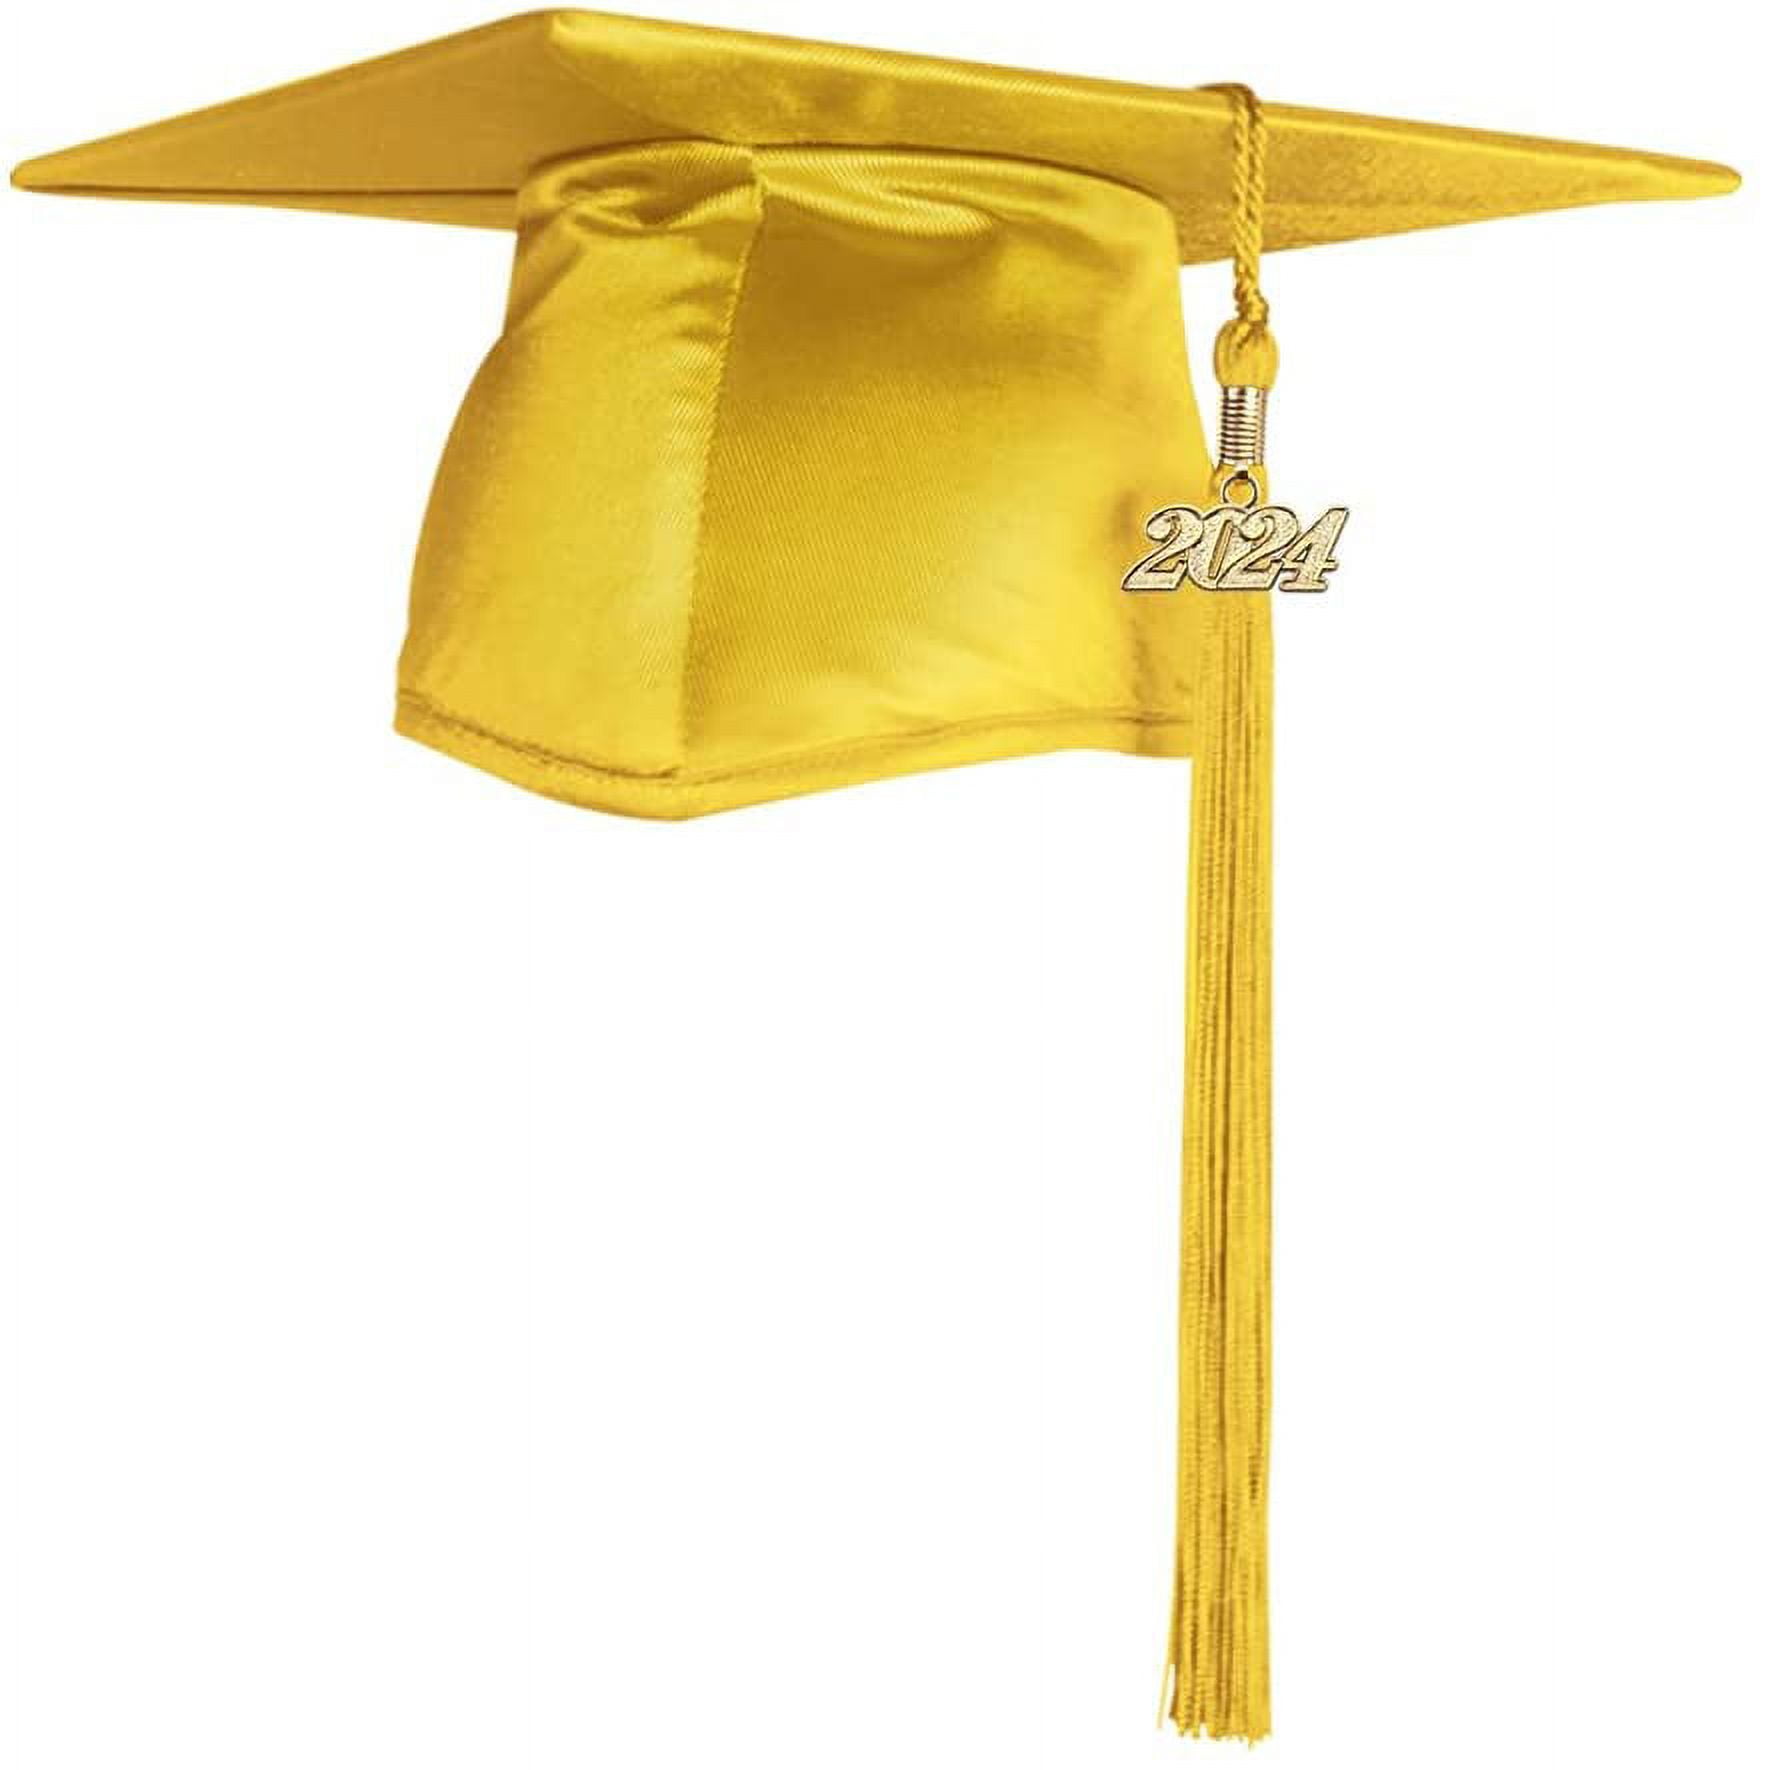 2024 Graduation Tassel Images – Browse 241 Stock Photos, Vectors